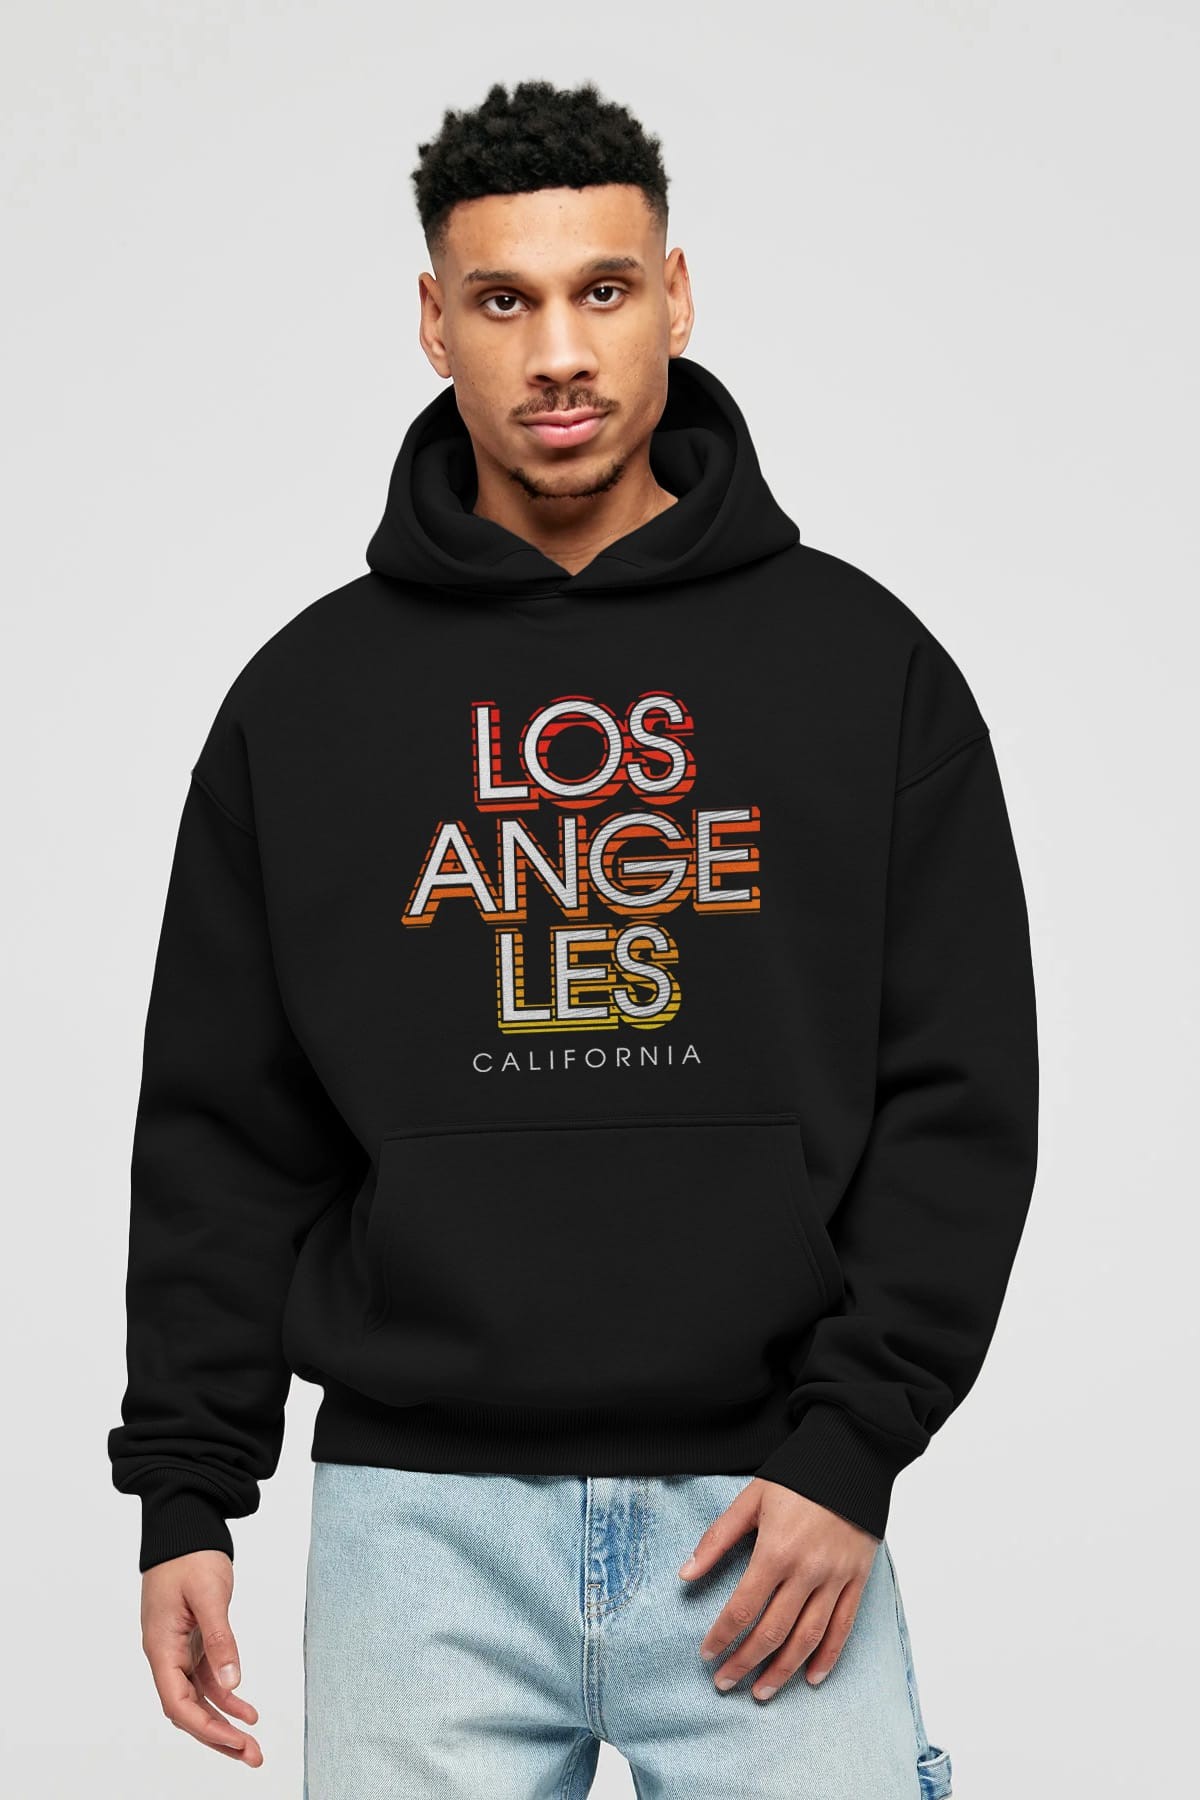 Los Angeles California Ön Baskılı Oversize Hoodie Kapüşonlu Sweatshirt Erkek Kadın Unisex